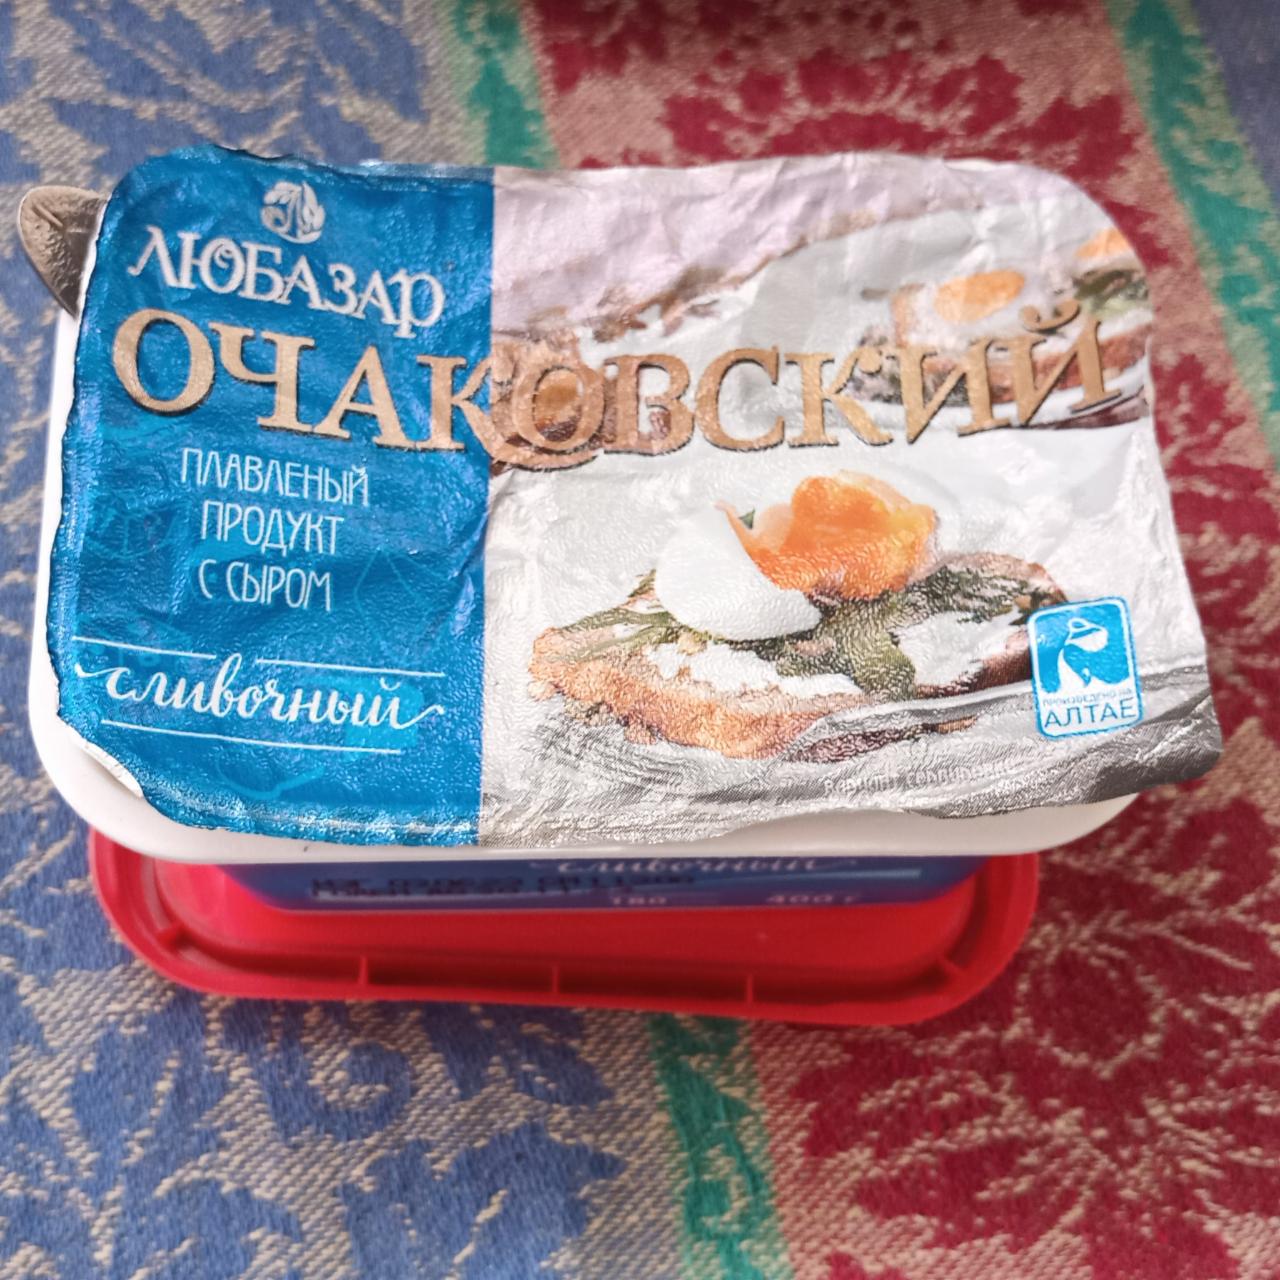 Фото - Плавленый продукт с сыром Сливочный Алтайский Очаковский Лакт